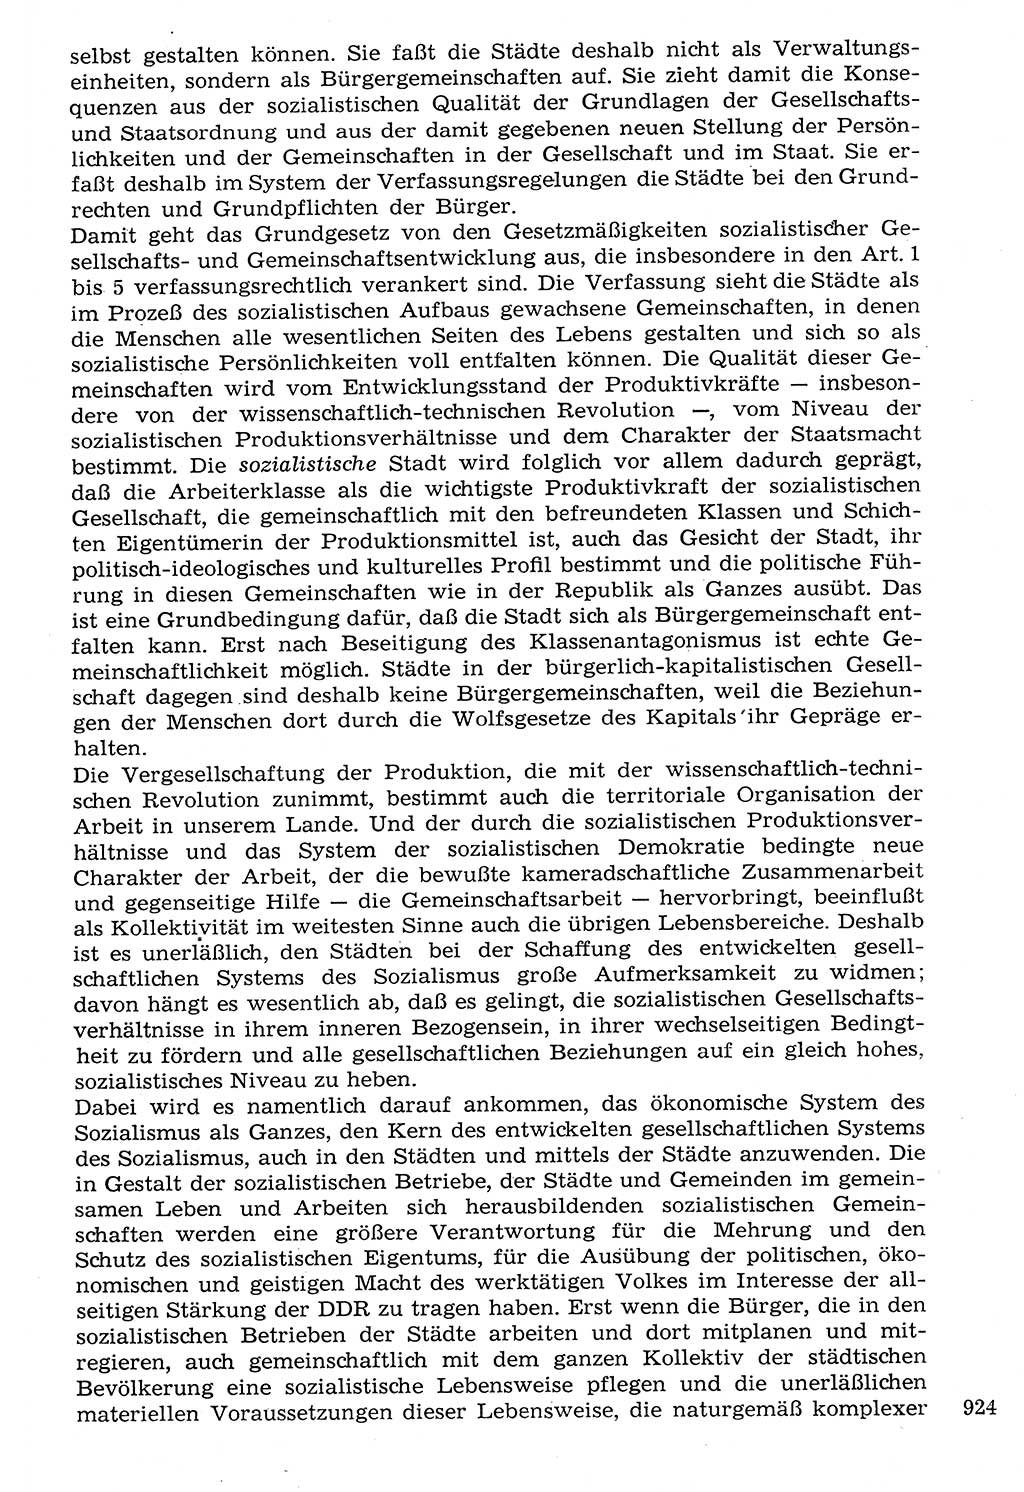 Staat und Recht (StuR), 17. Jahrgang [Deutsche Demokratische Republik (DDR)] 1968, Seite 924 (StuR DDR 1968, S. 924)